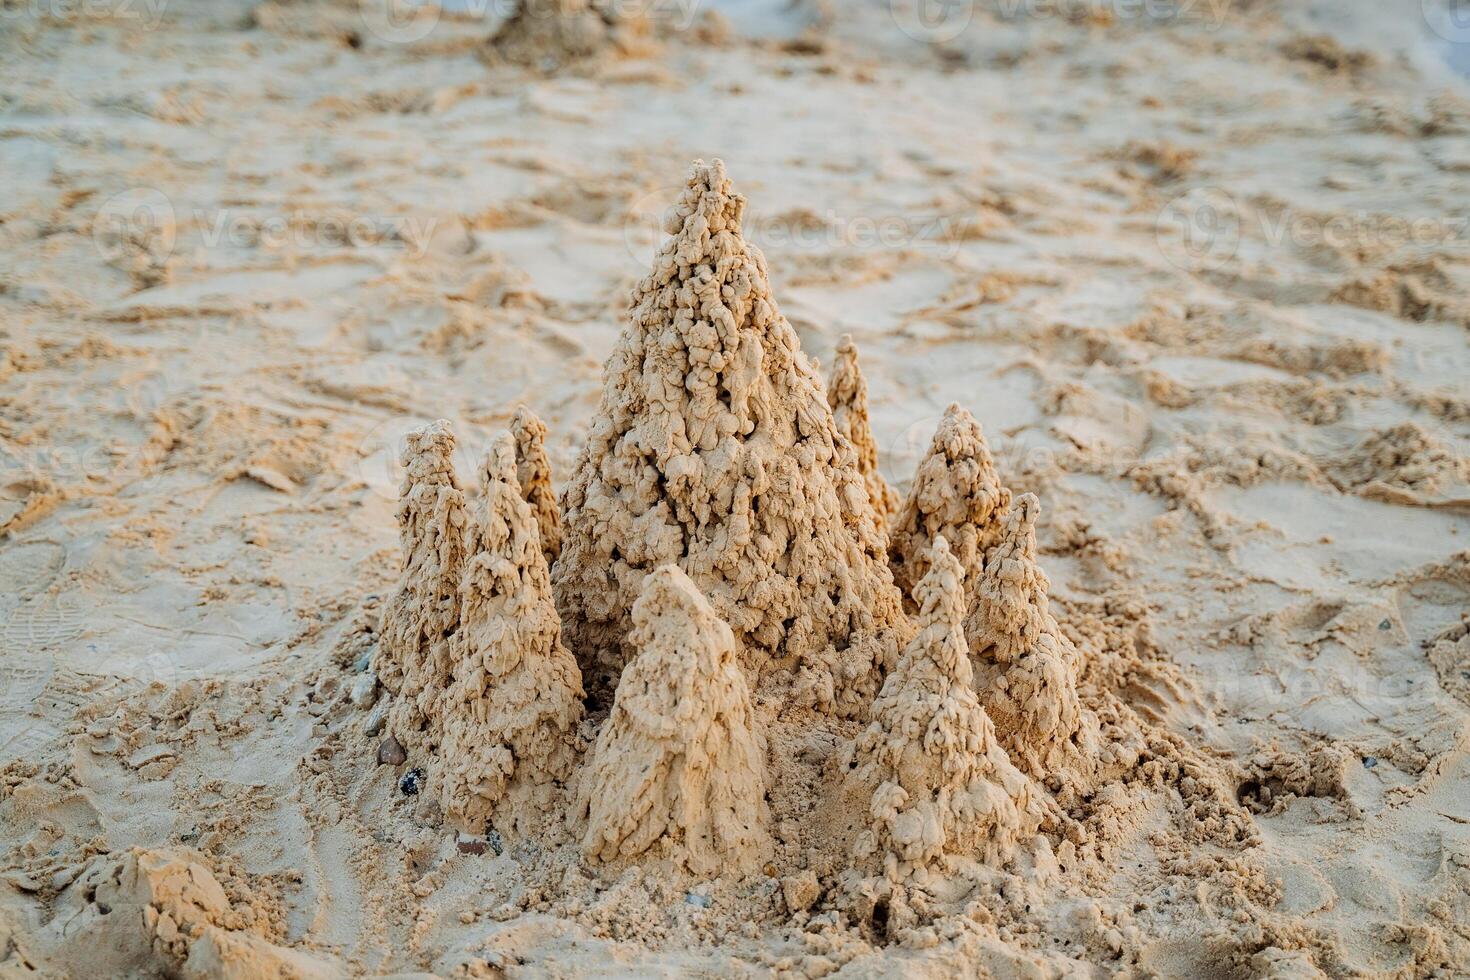 resten på de hav bygger torn av sand, en sand slott, vit bra sand. foto